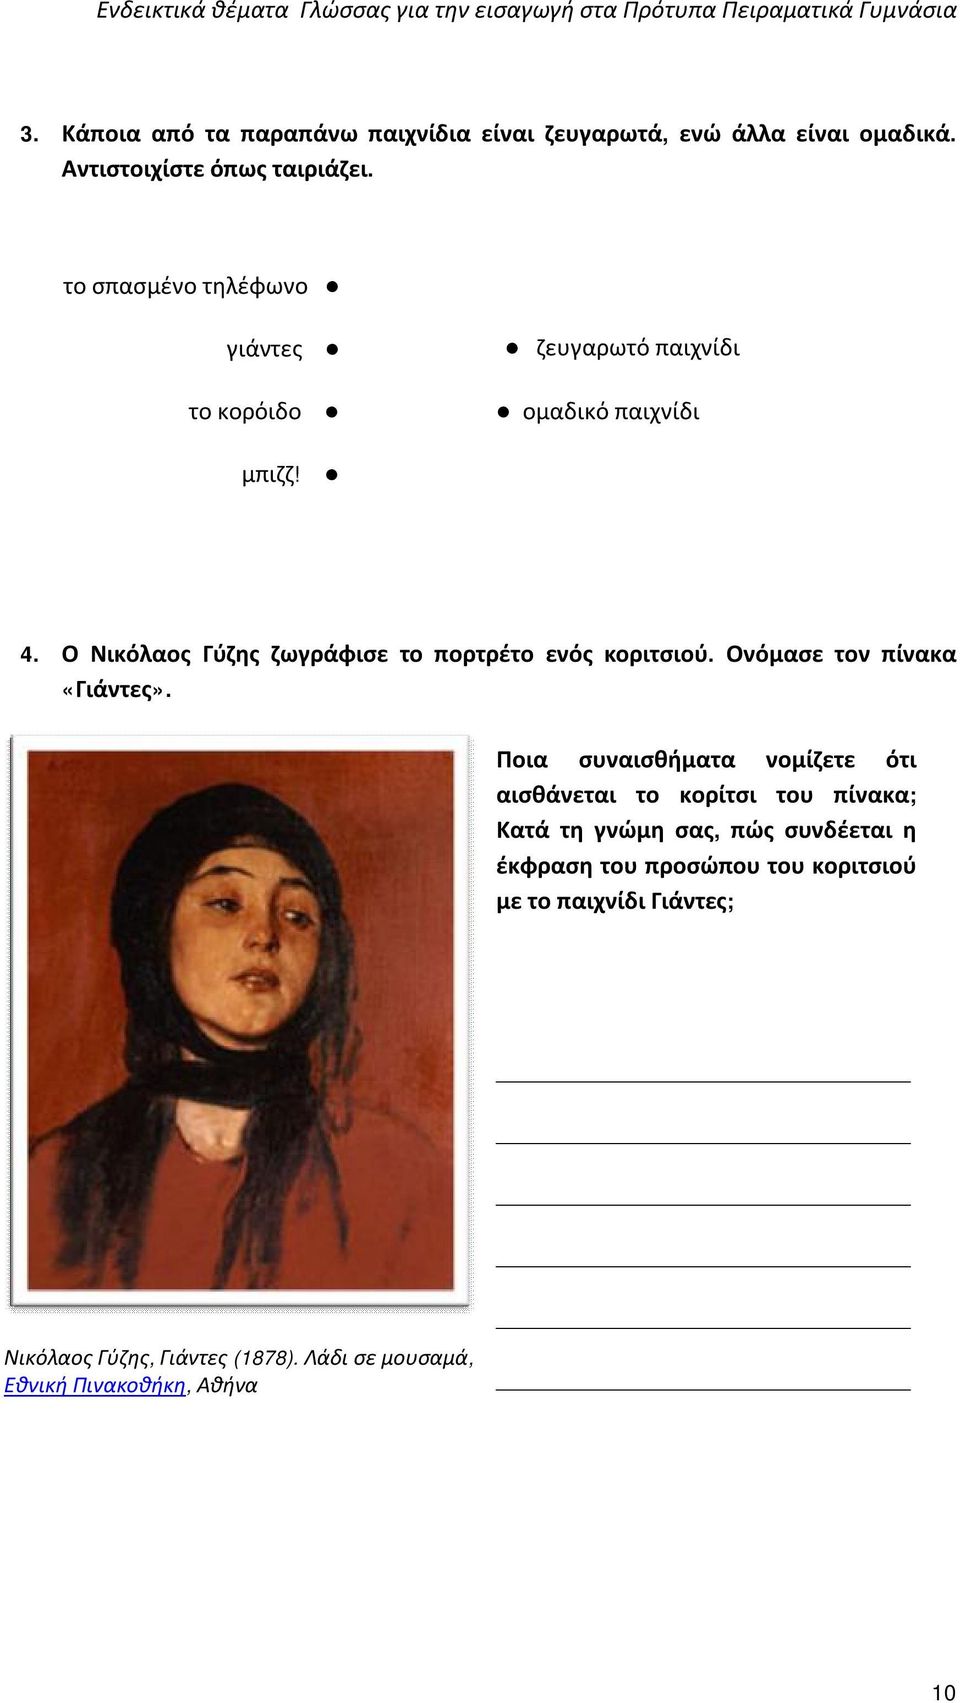 Ο Νικόλαος Γύζης ζωγράφισε το πορτρέτο ενός κοριτσιού. Ονόμασε τον πίνακα «Γιάντες».